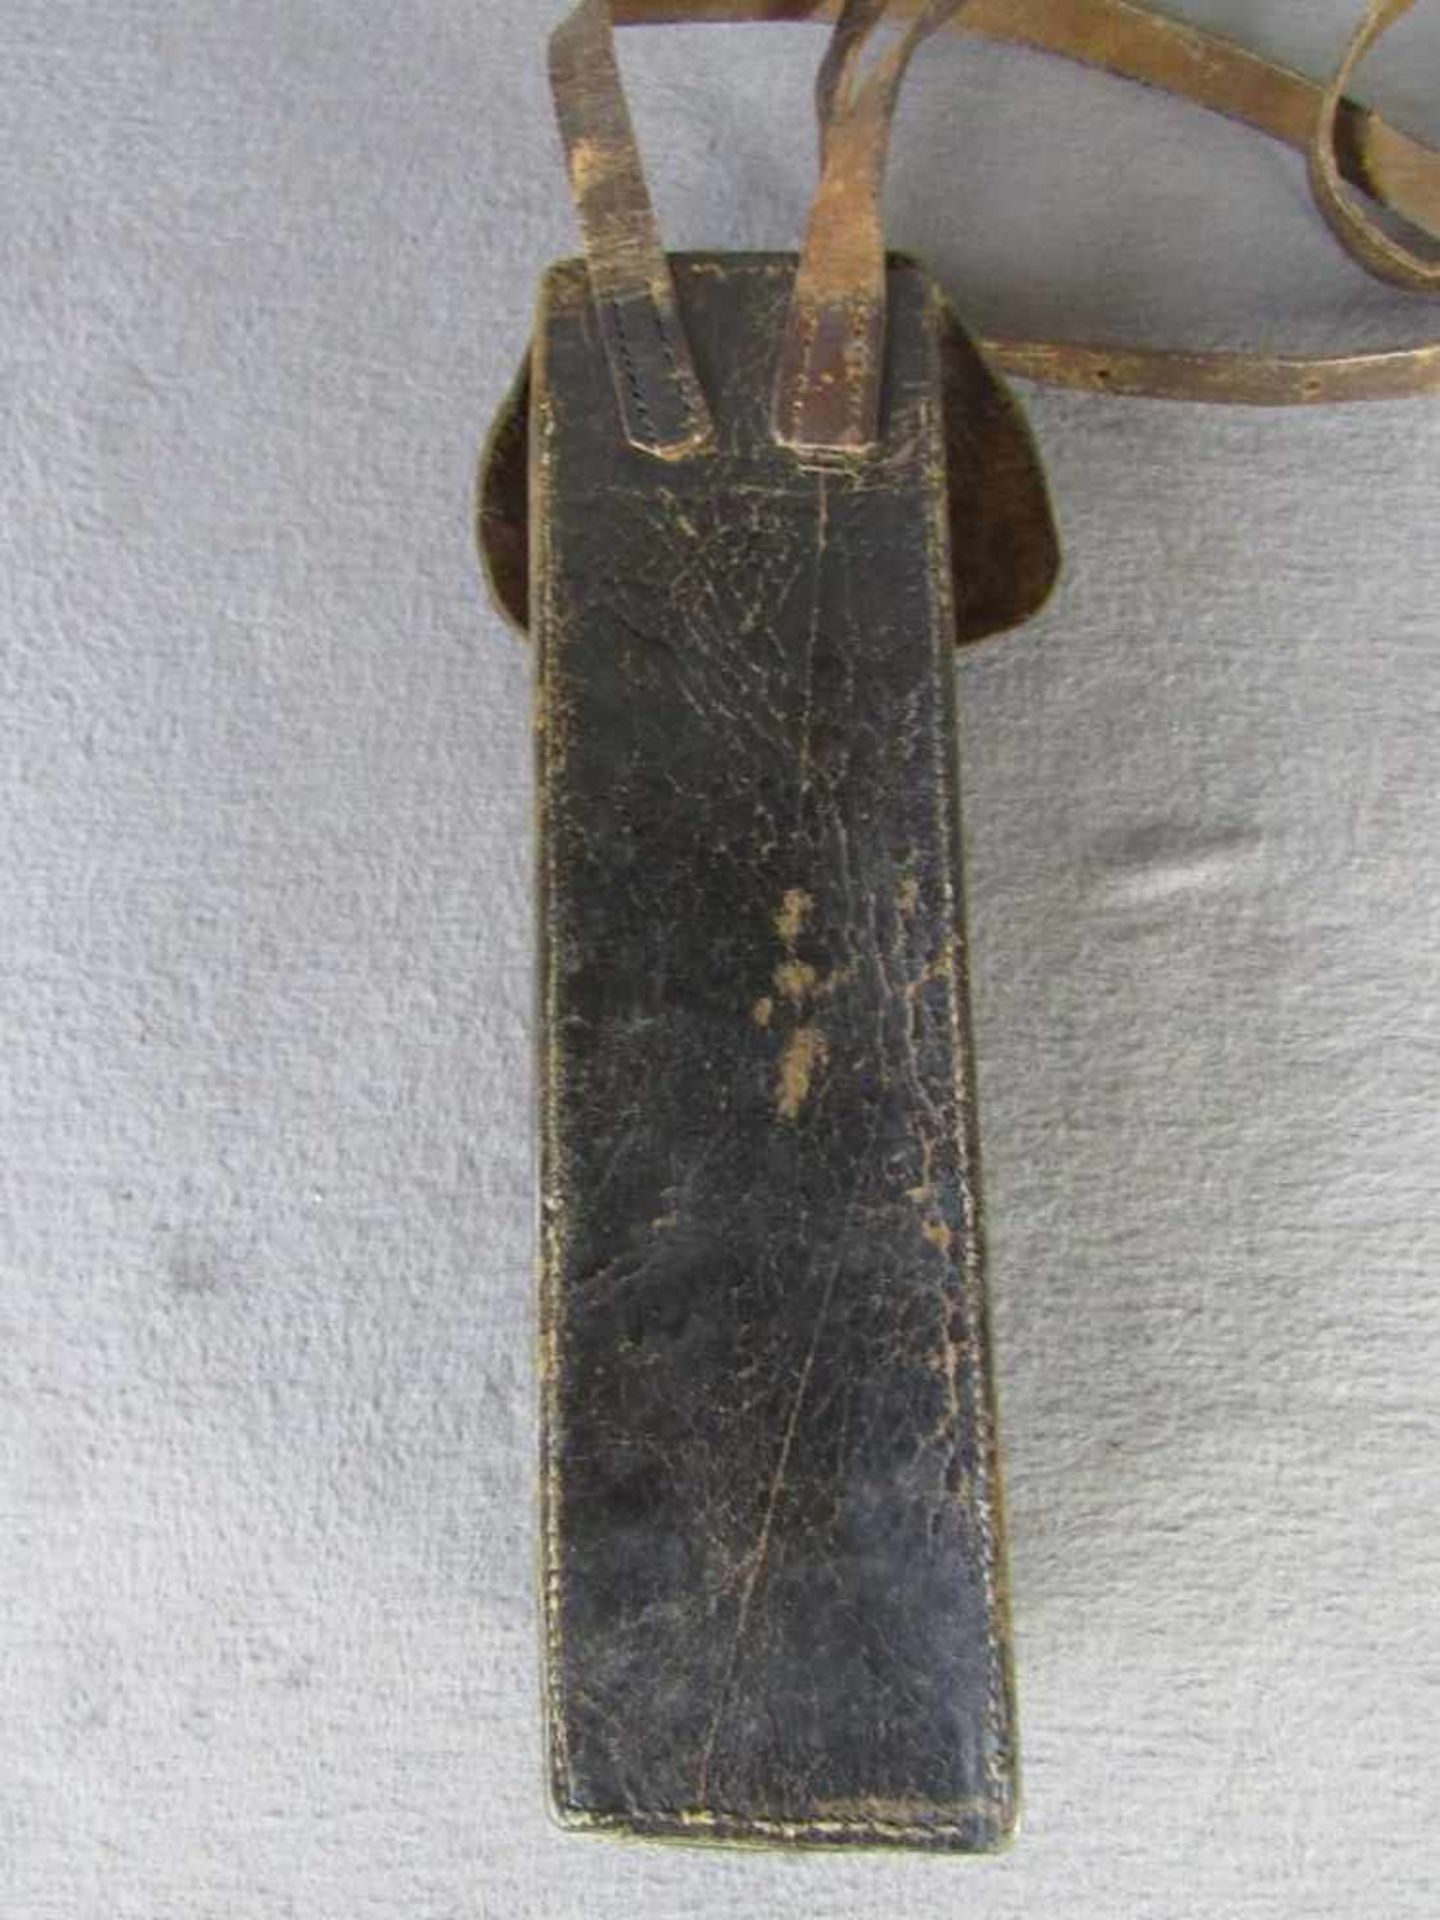 Seltene militärische Zielfernrohrtasche mit Riemen um 1880- - -20.00 % buyer's premium on the hammer - Image 2 of 3